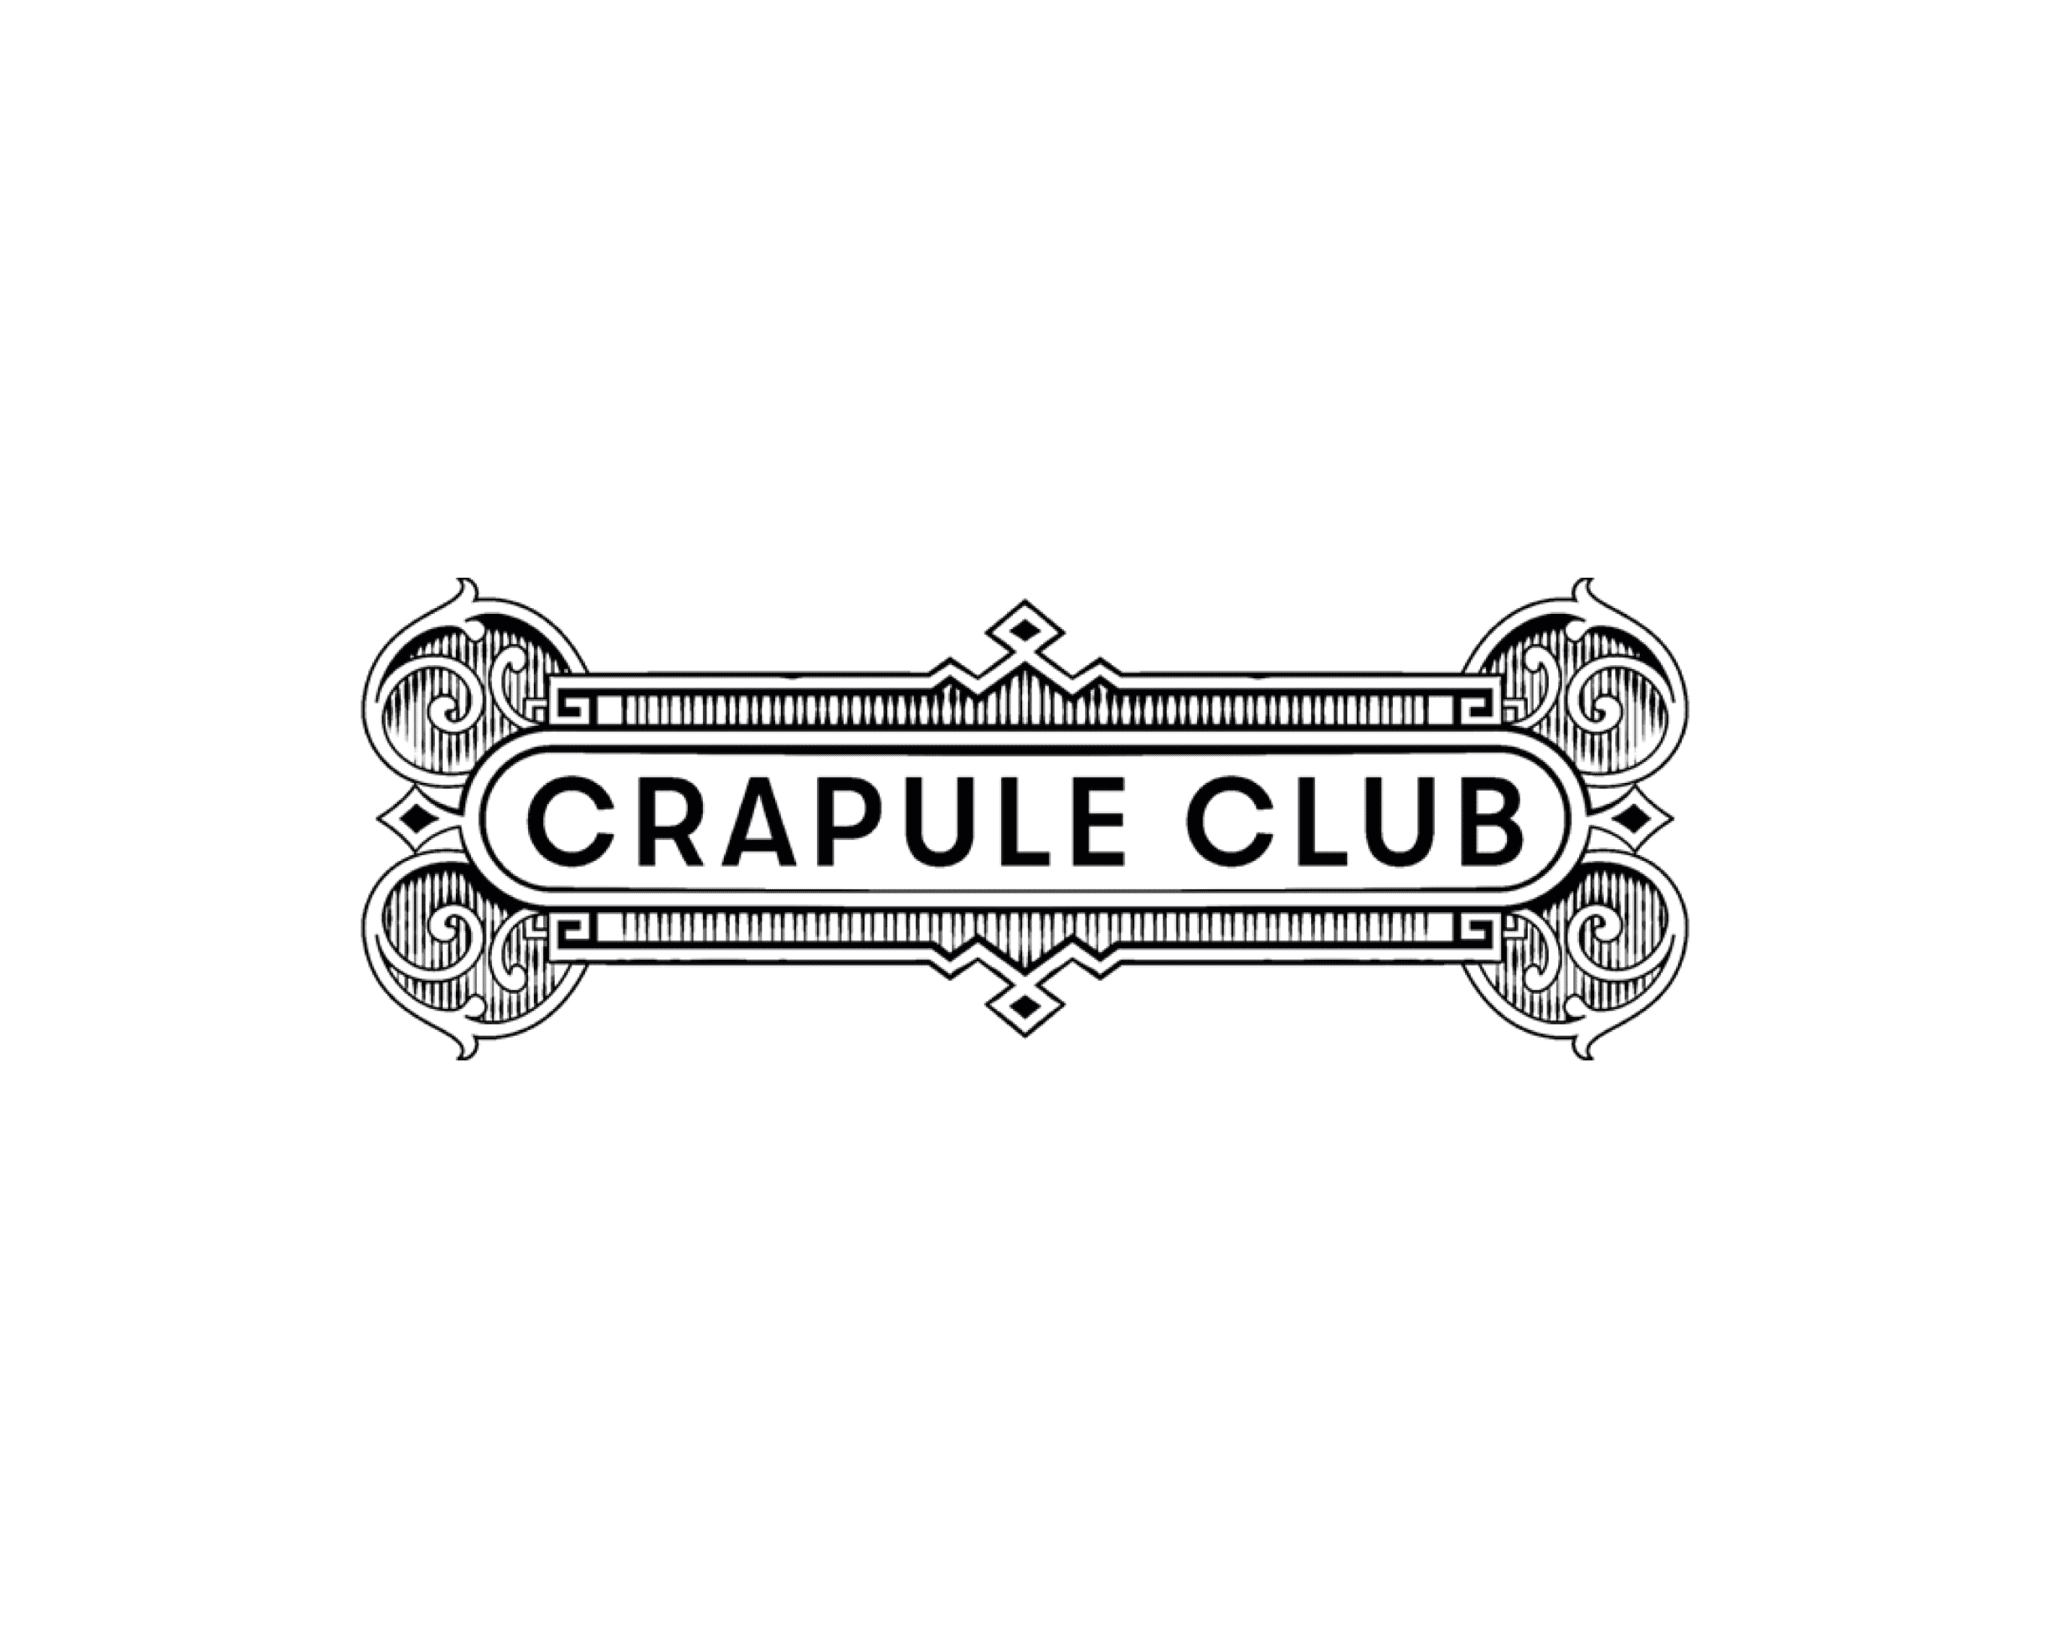 Crapule club